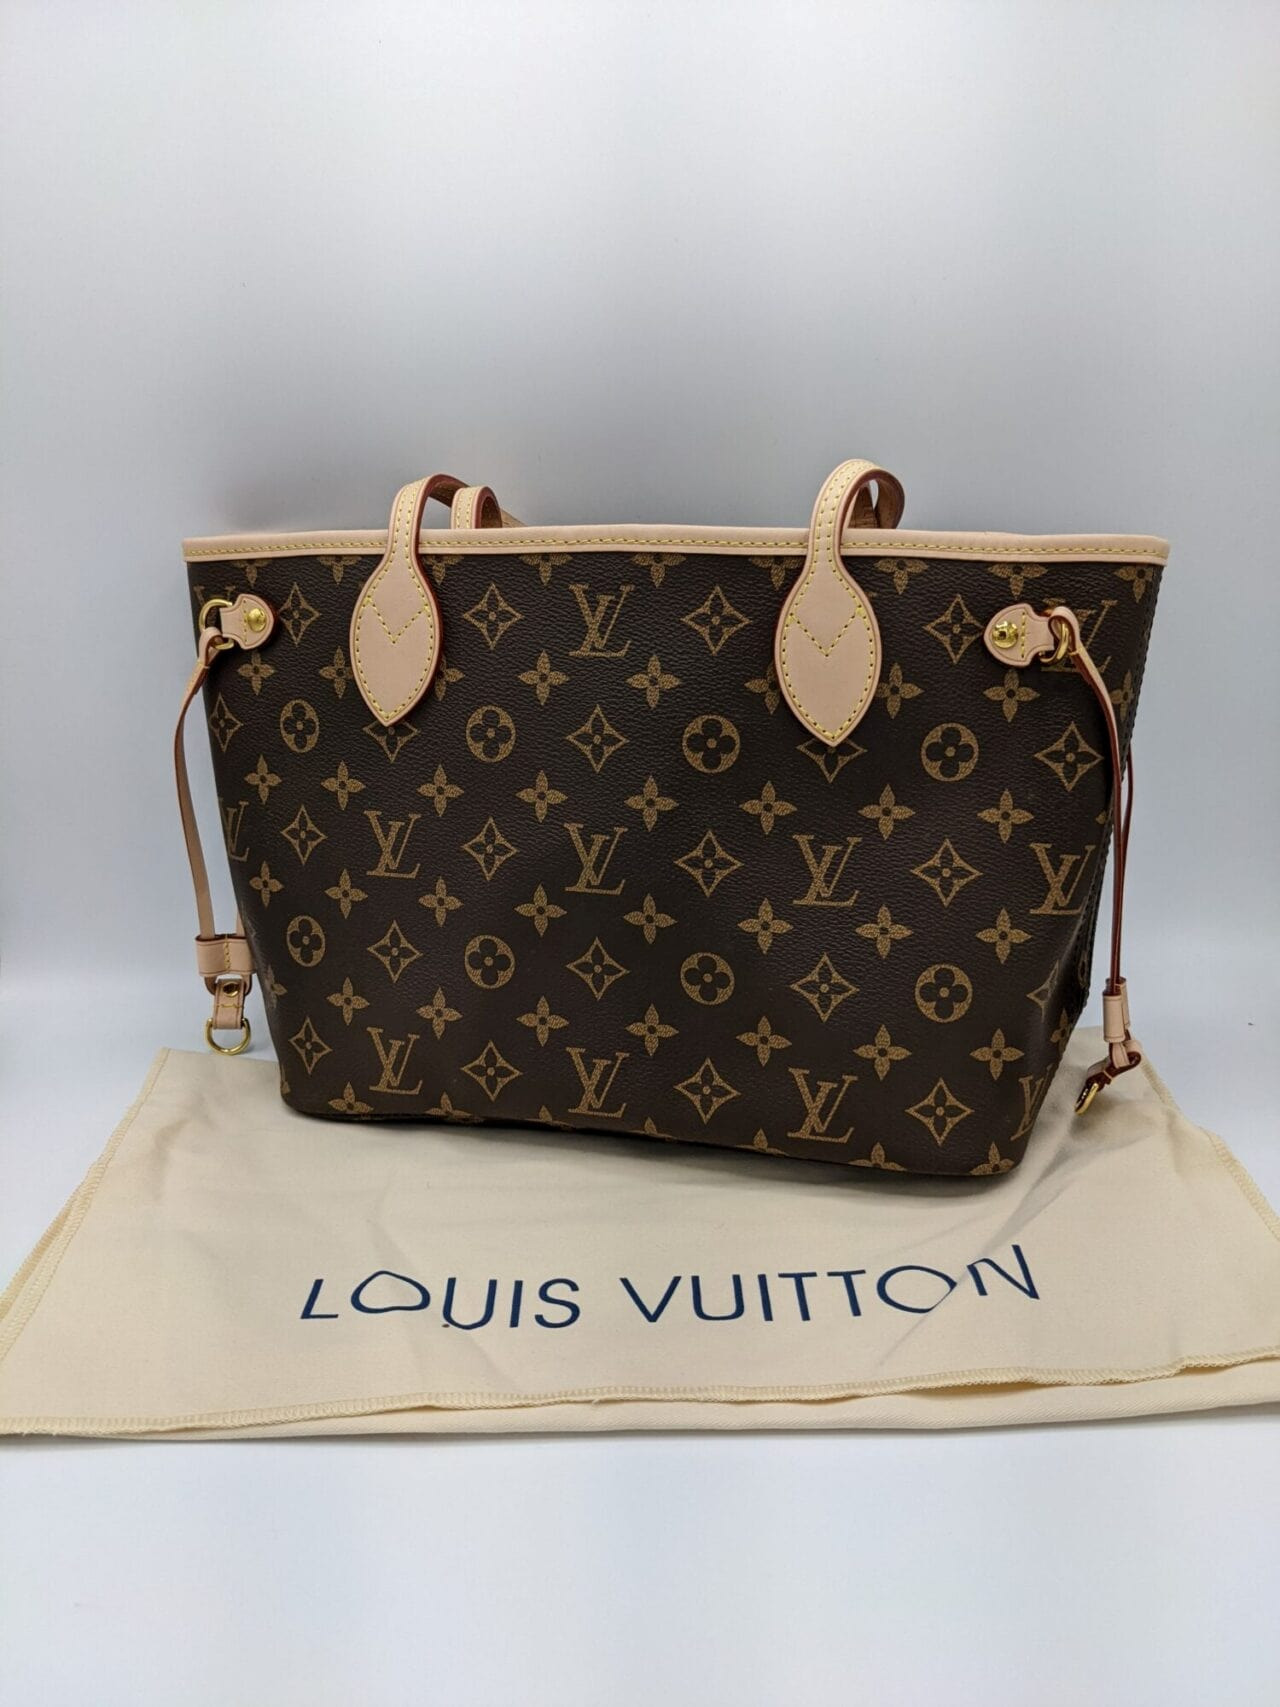 Louis Vuitton Neverfull Size Comparison Guide 2023 • Petite in Paris